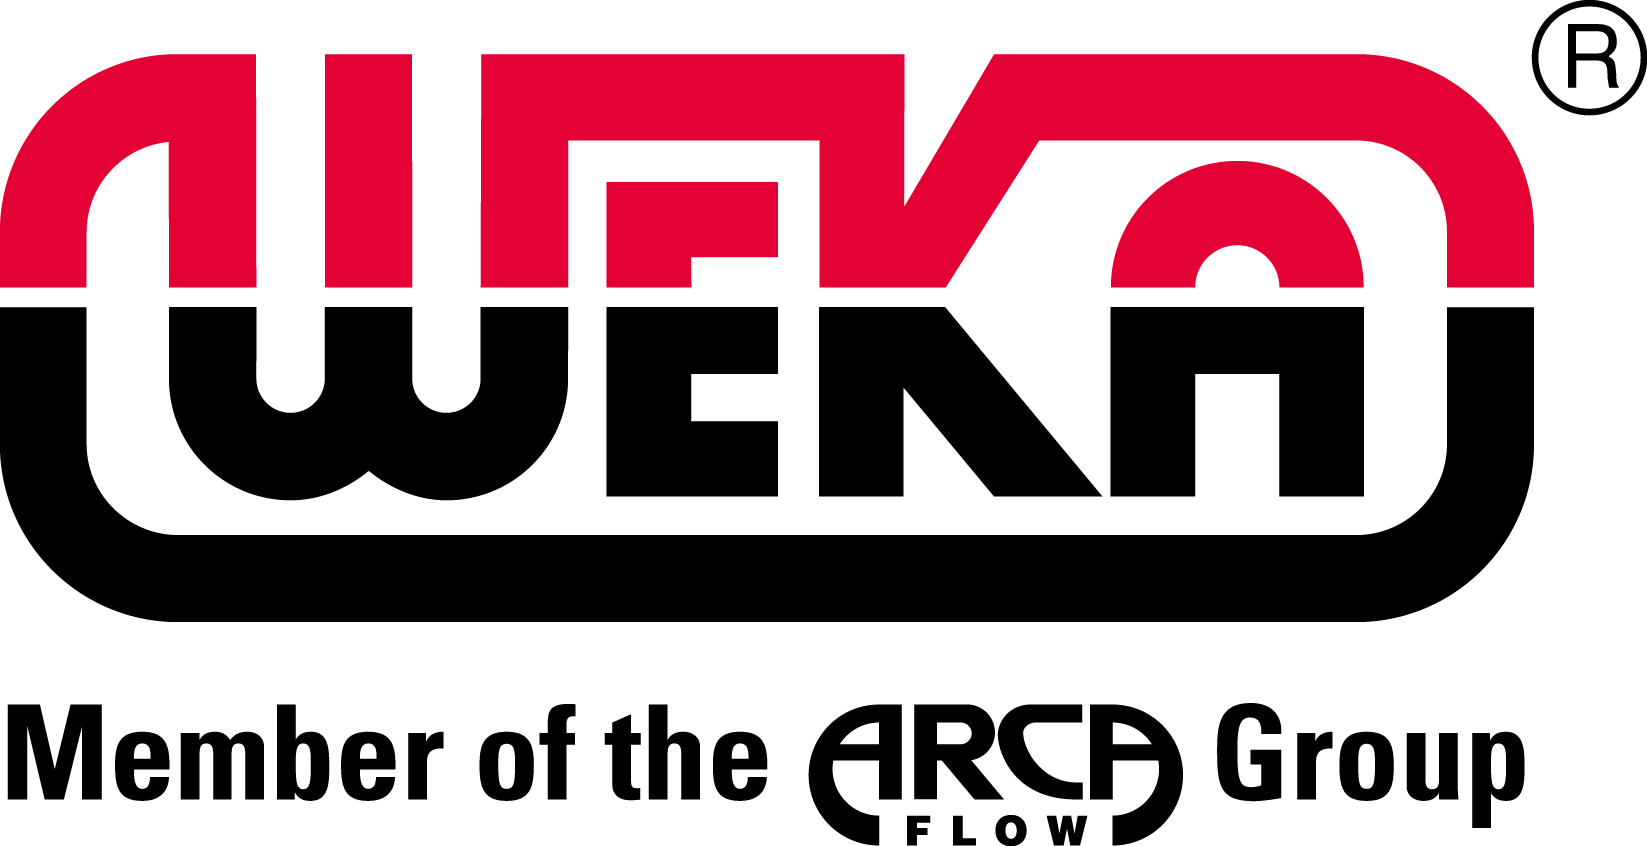 WEKA logo